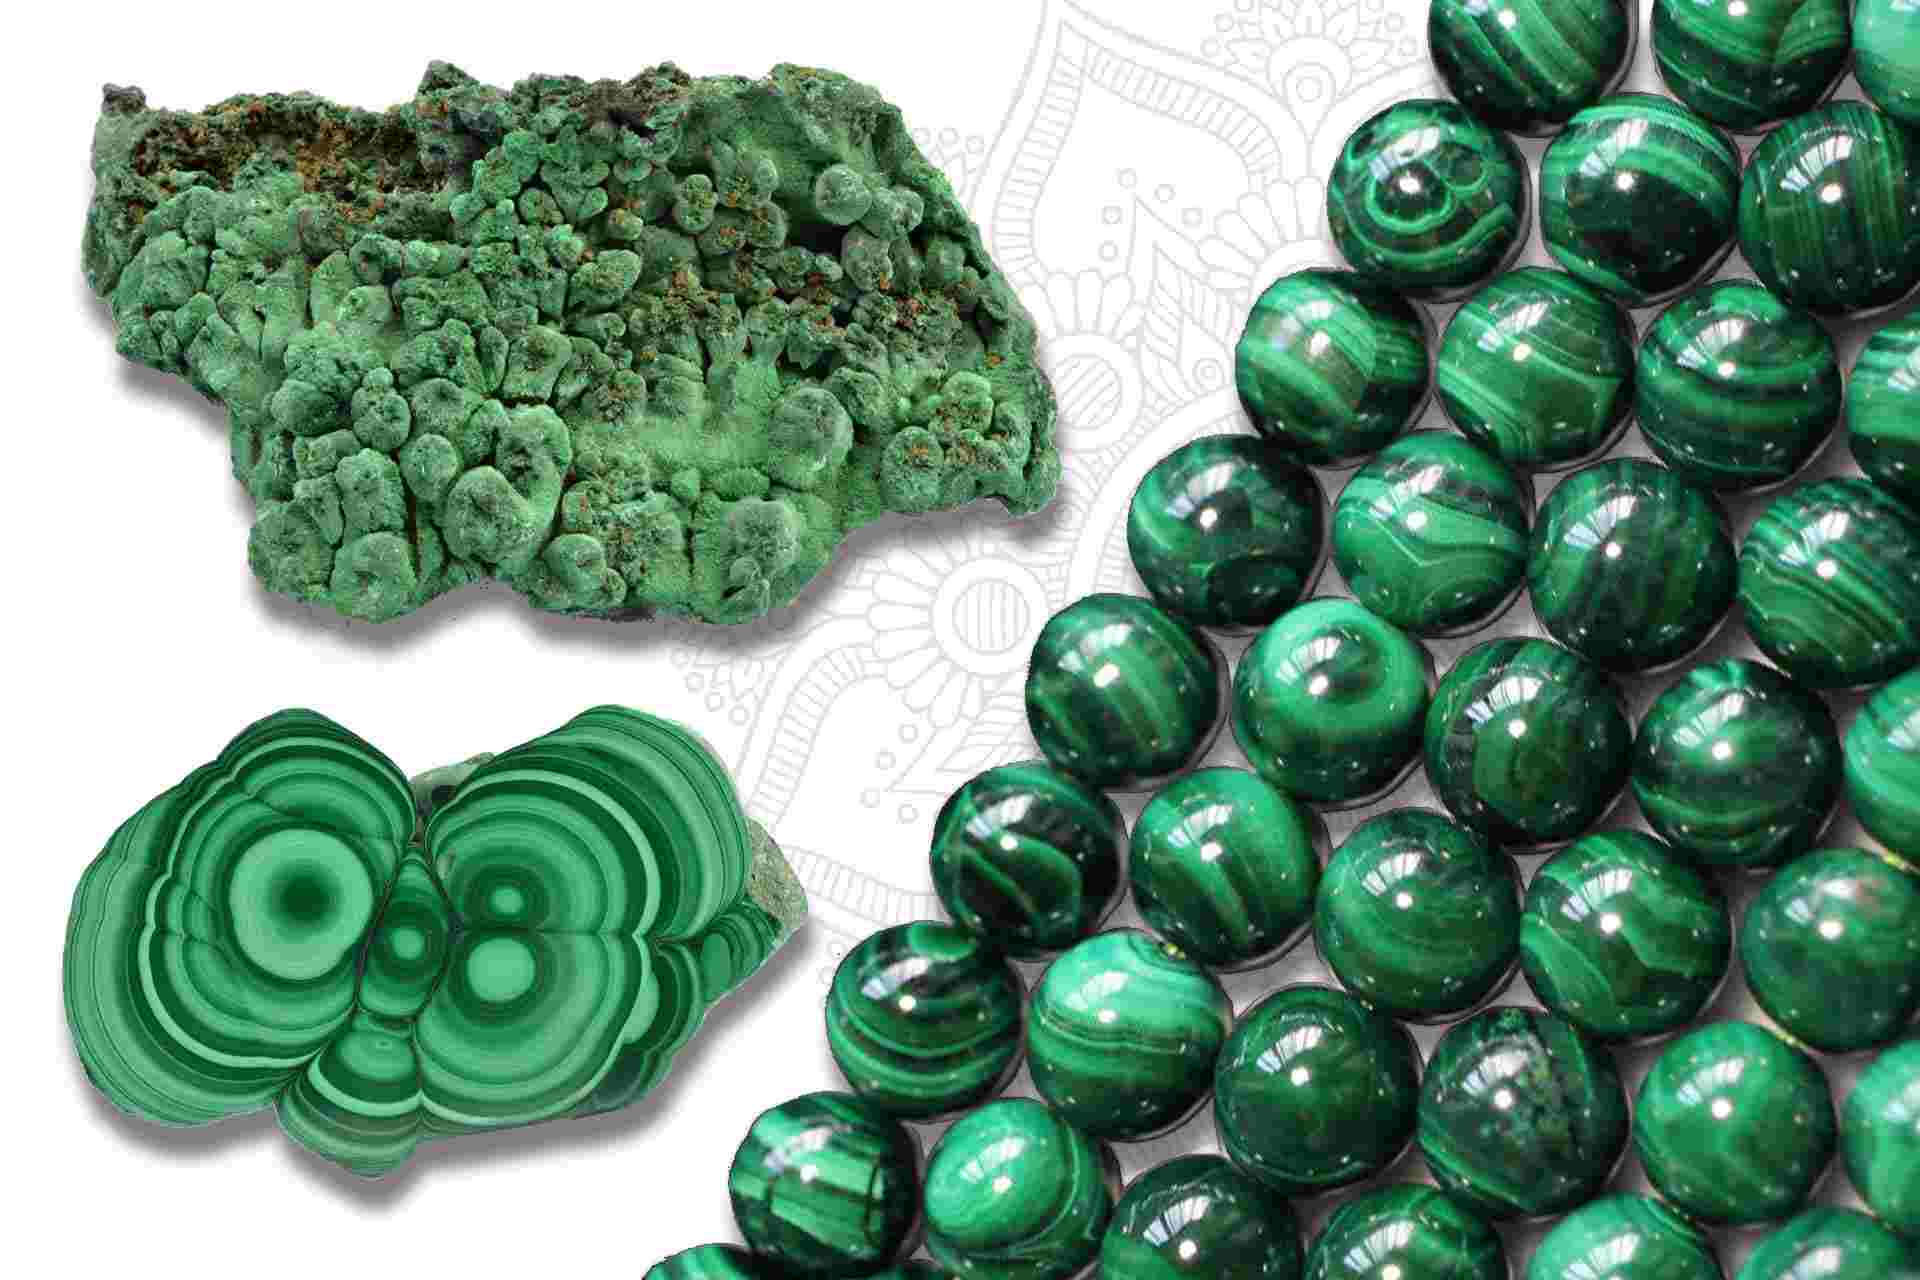 La malachite, une pierre verte étonnante - Actualités - Corps et Ames